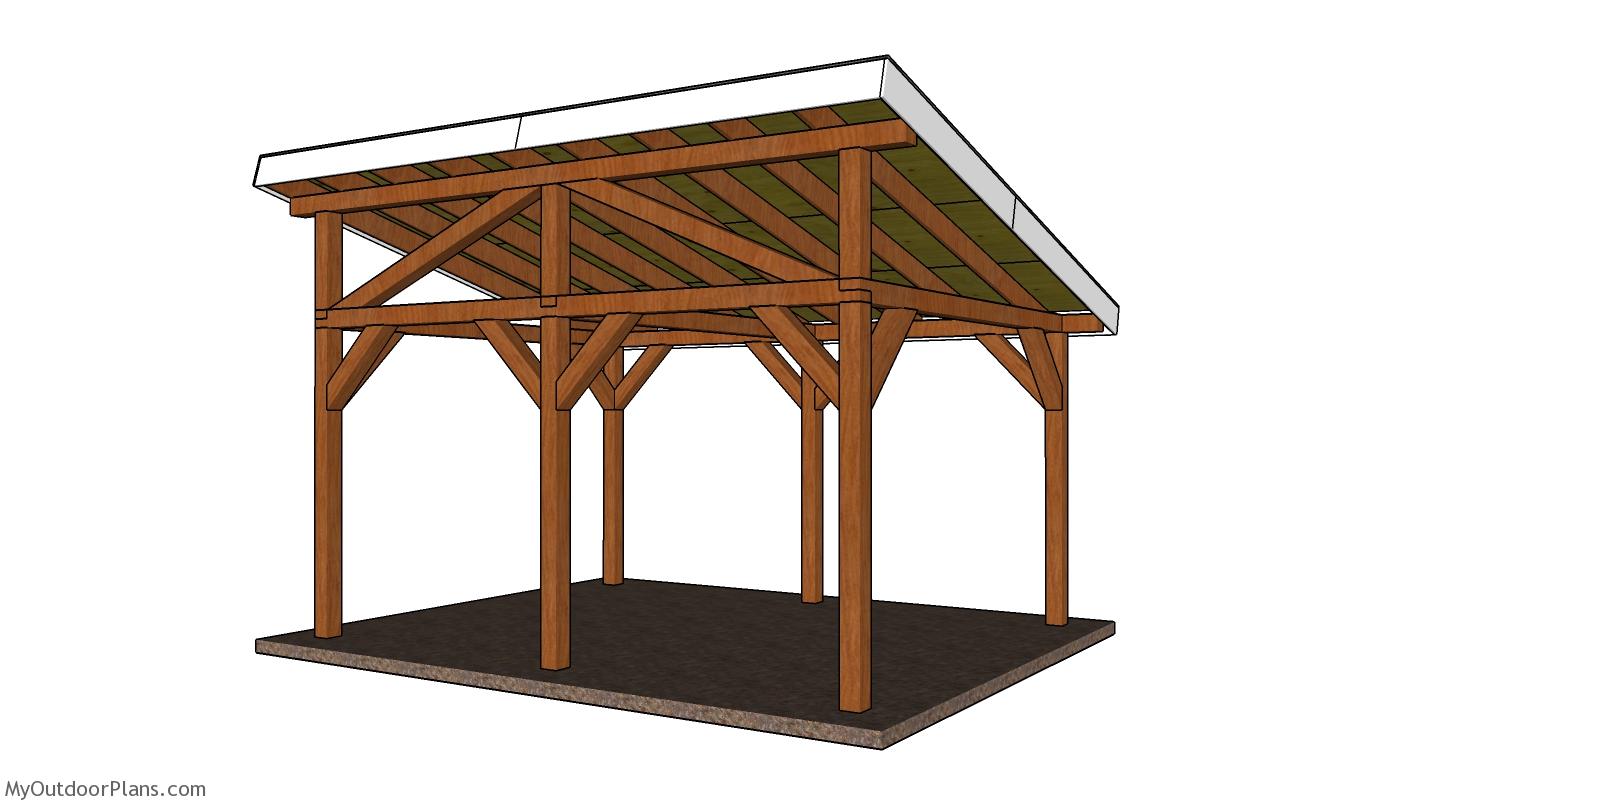 12×16 lean to pavilion plans – back view myoutdoorplans